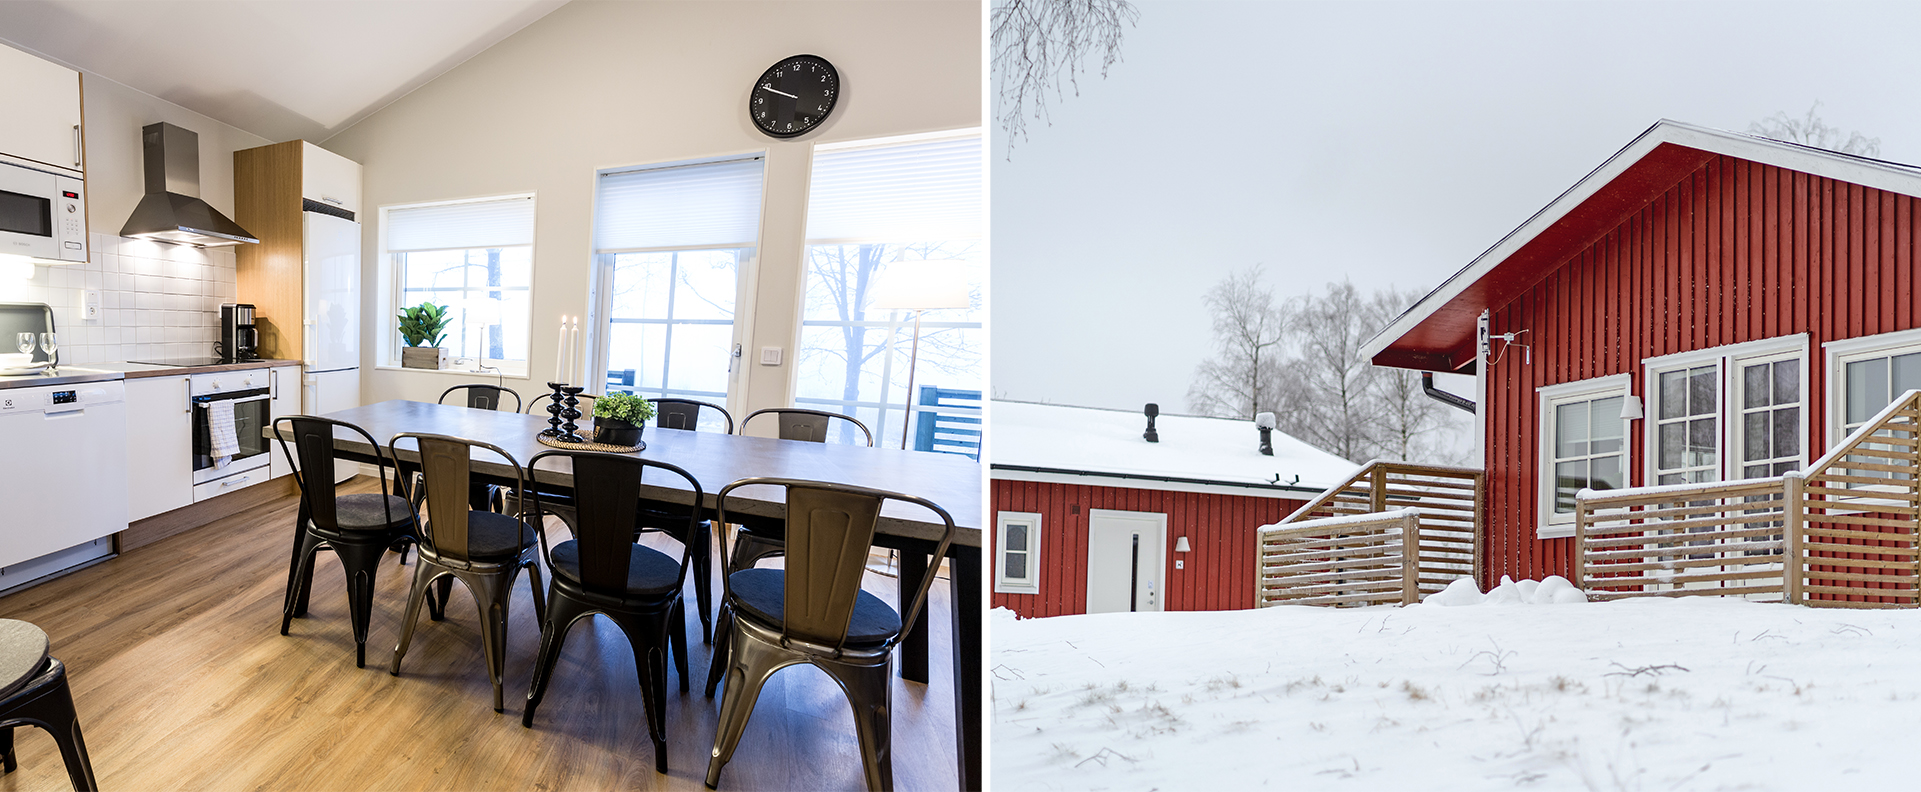 En röd stuga med snö utanför och en interiör bild från stugan med ett bord och stolar, kök med spis och diskbänk.